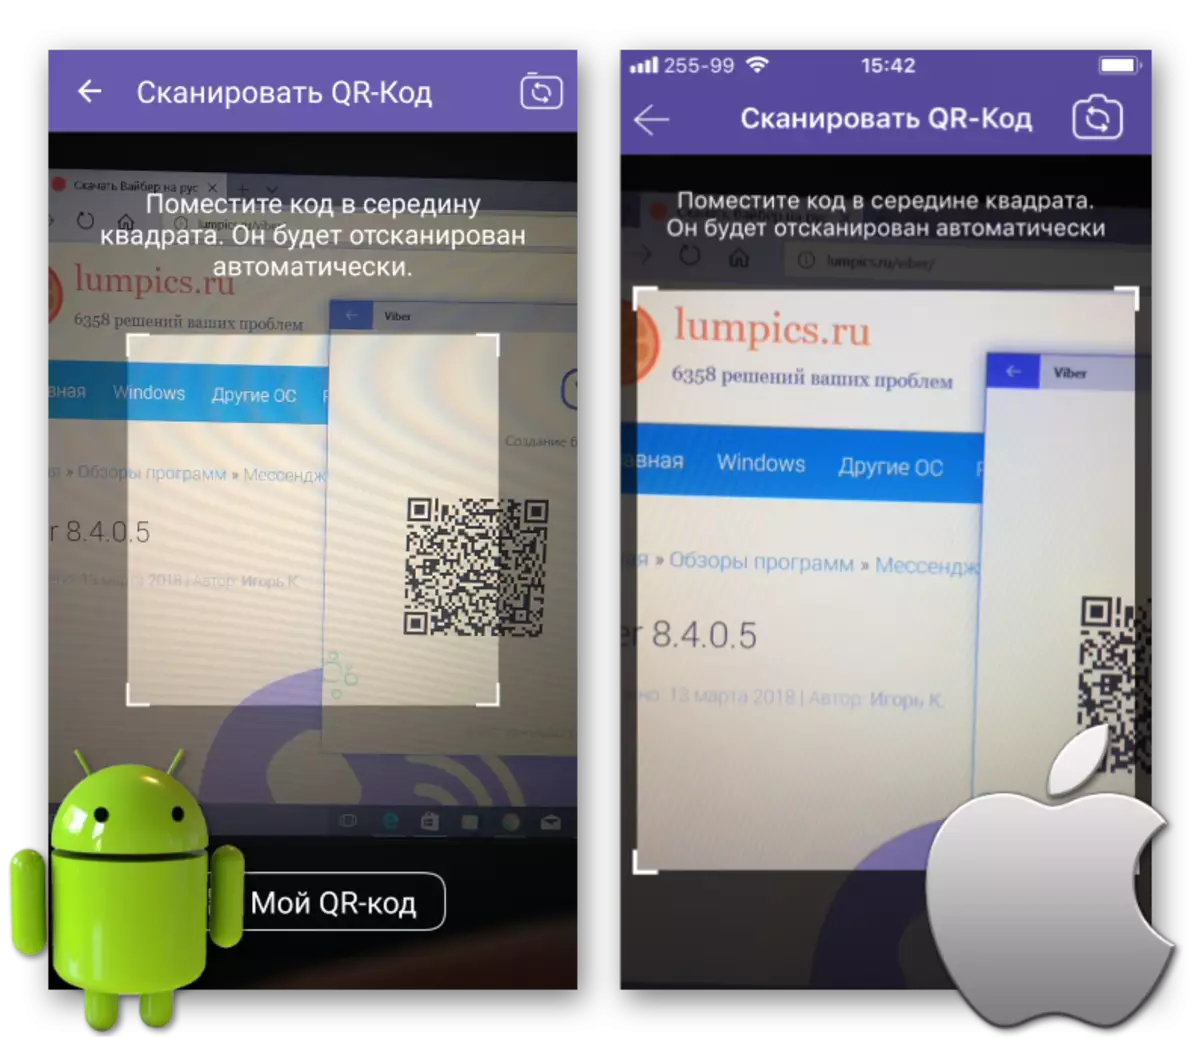 Viber për Windows QR-Code Scan duke përdorur Android Smartphone ose iPhone